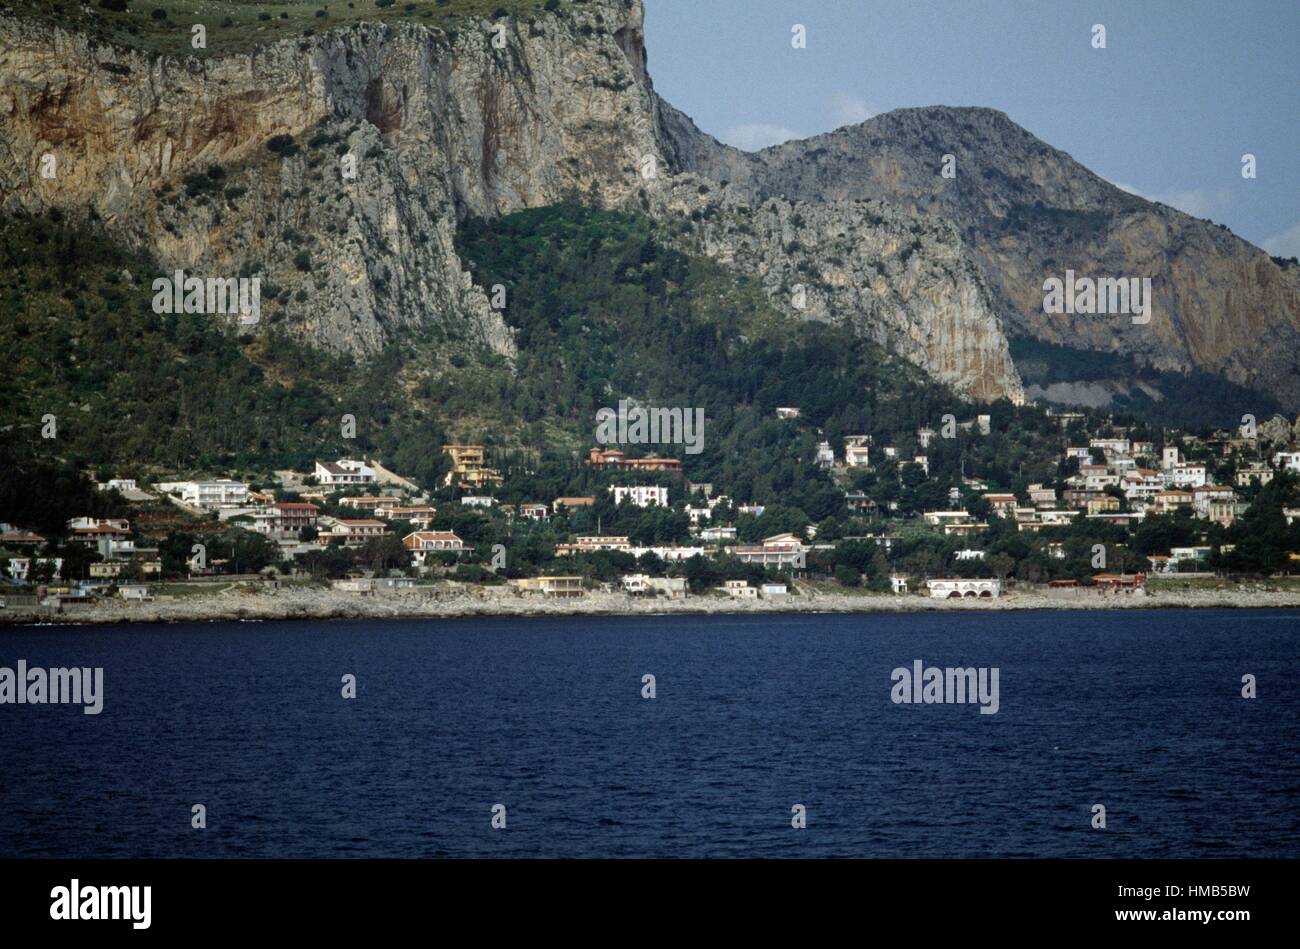 The coast near Punta Raisi, Palermo, Sicily, Italy. Stock Photo